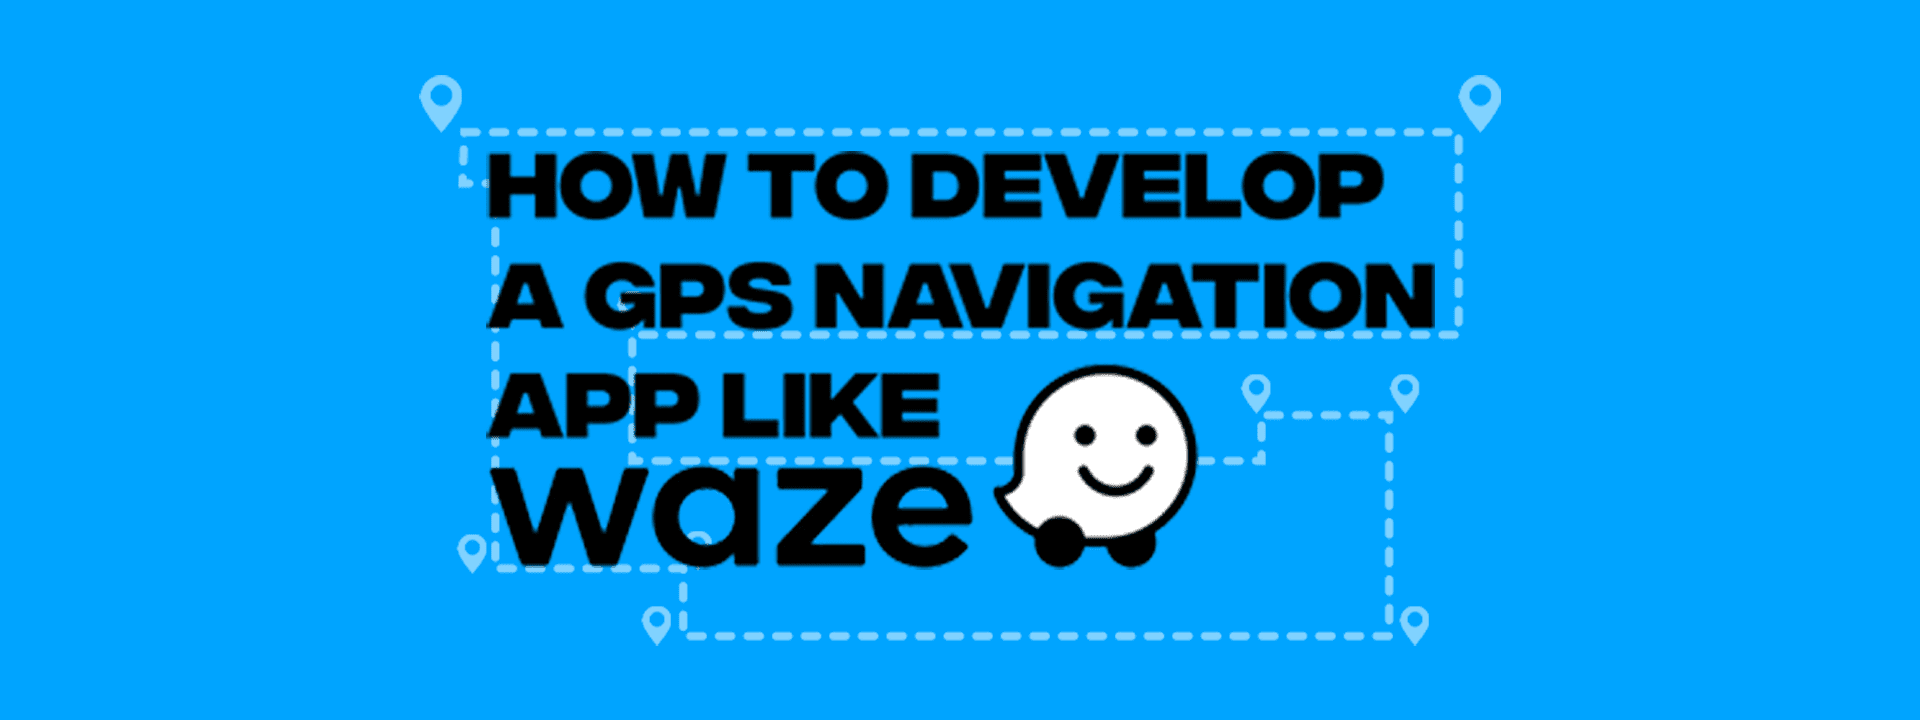 Develop a GPS Navigation App like Waze